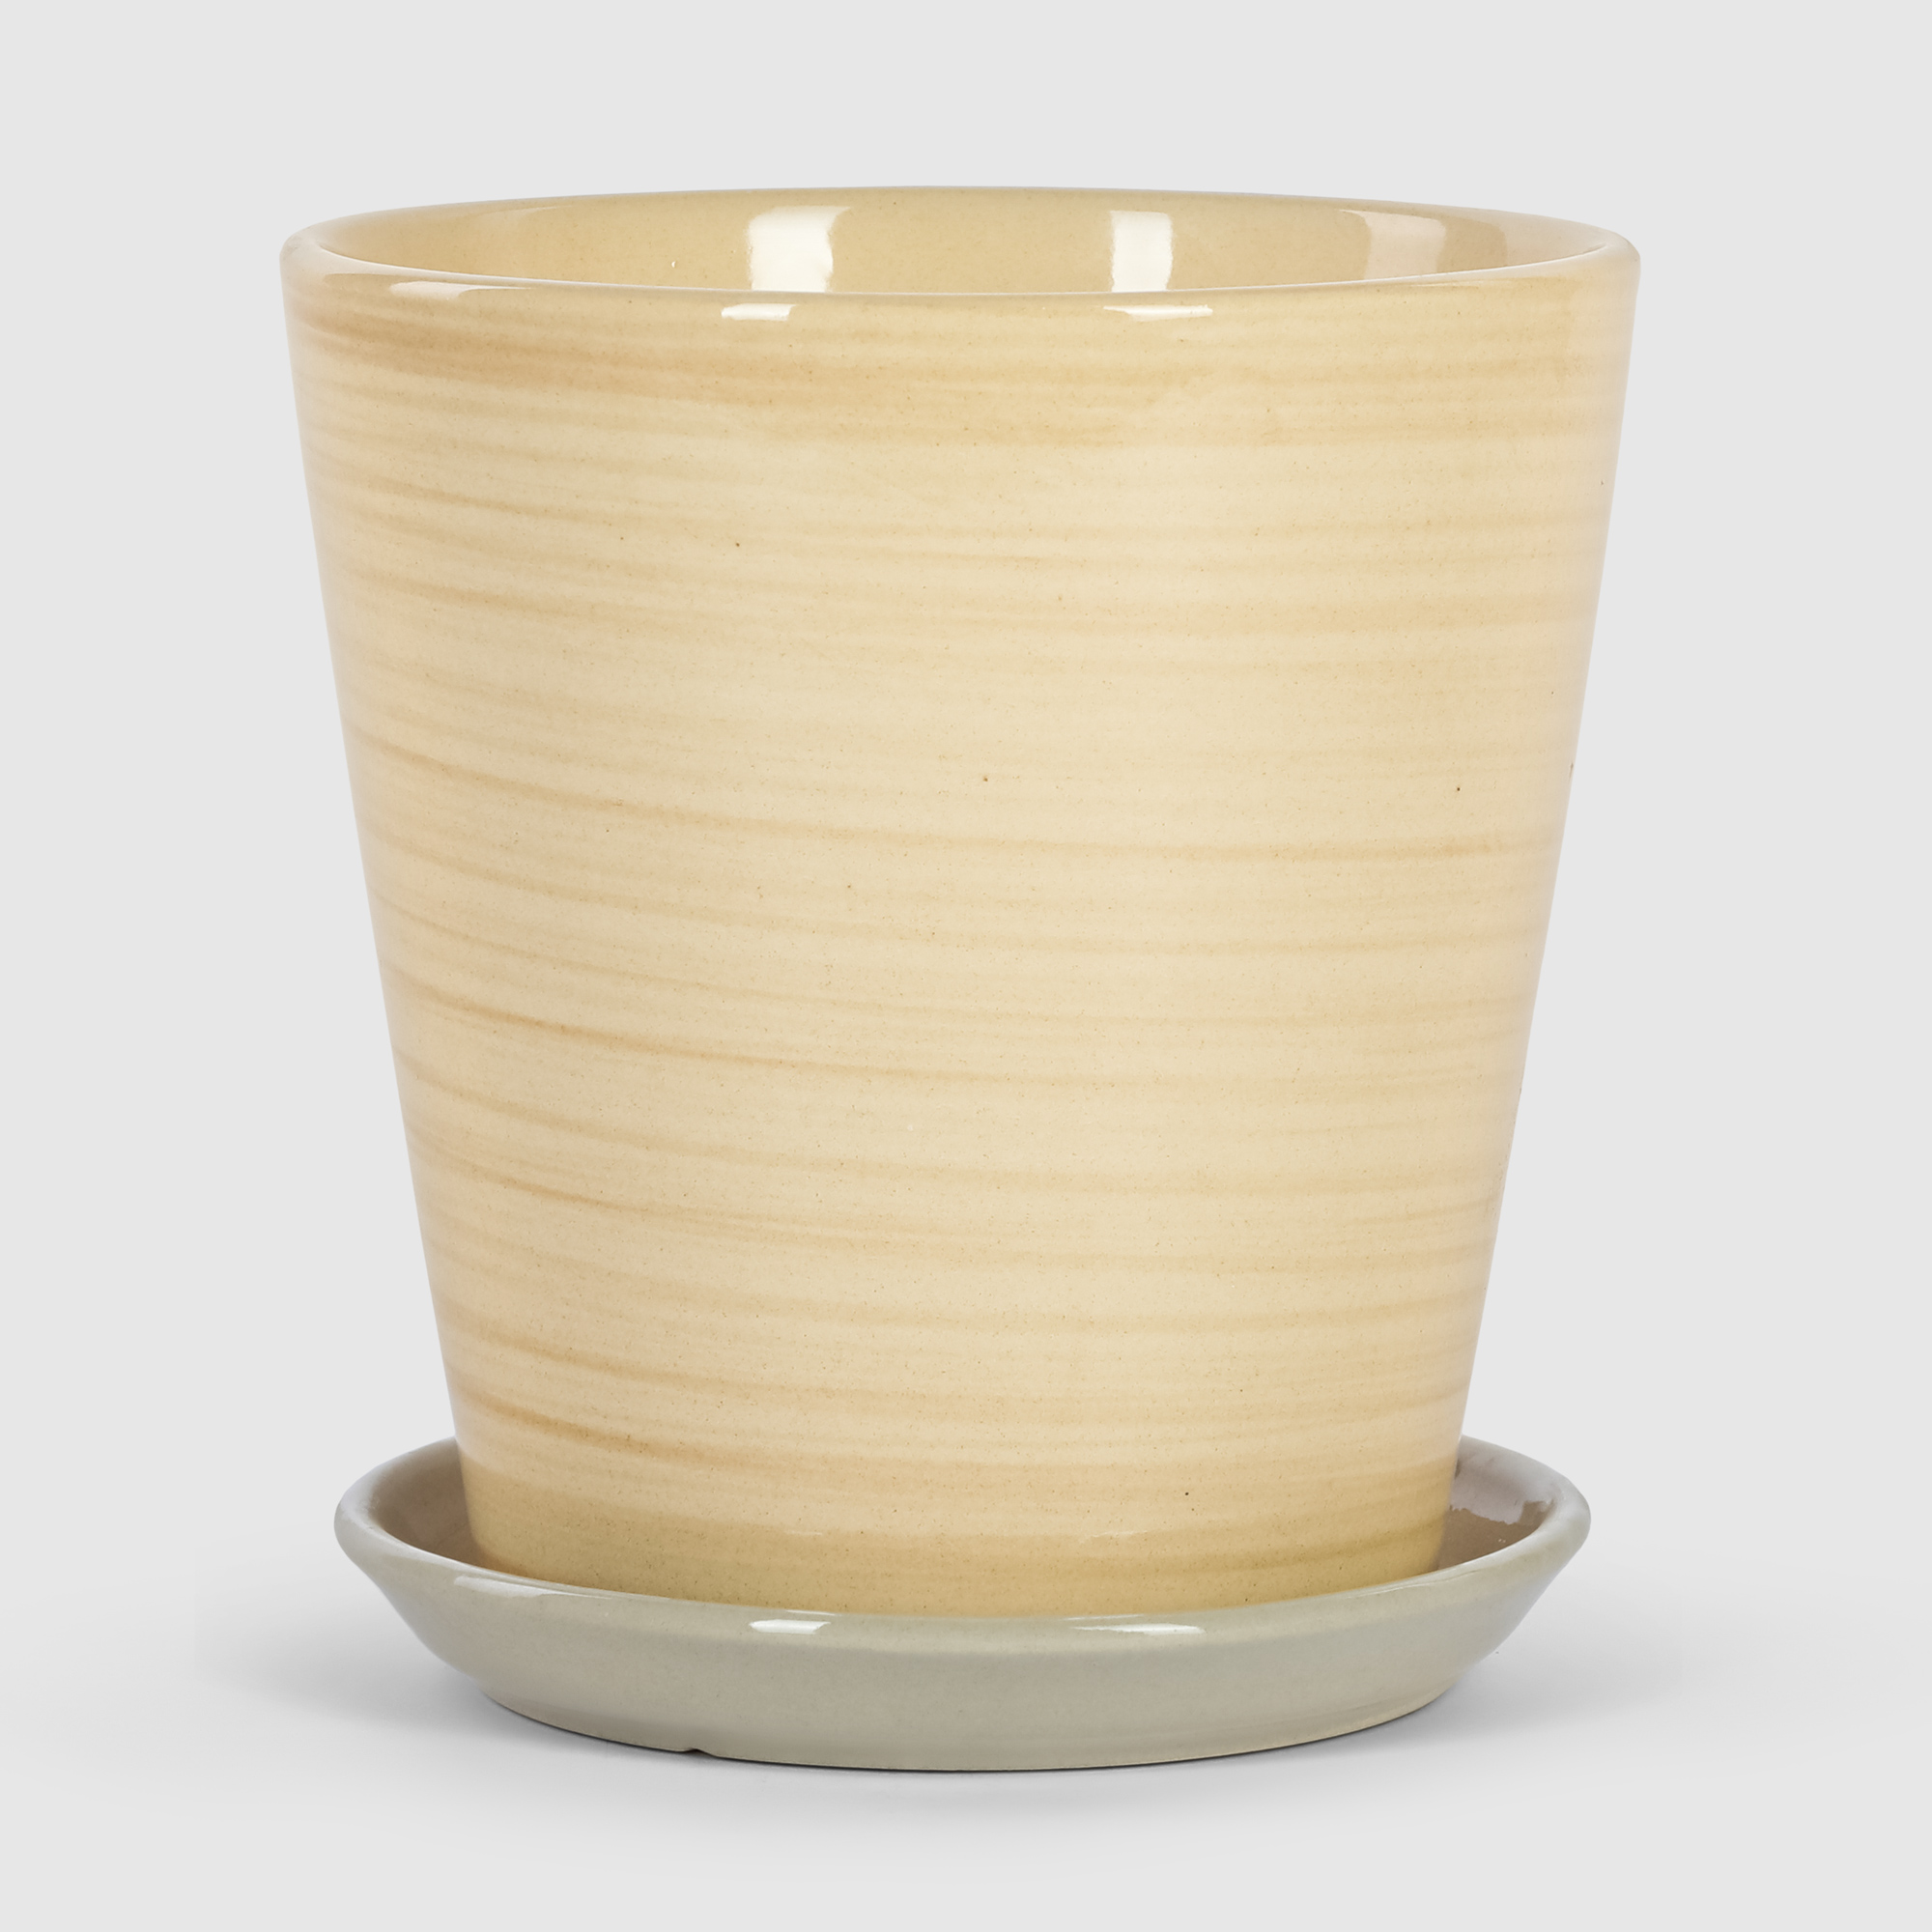 Кашпо керамическое для цветов Shine Pots 20x20см бежевое полосатое кашпо керамическое для ов shine pots 20x20см коричневый глянец